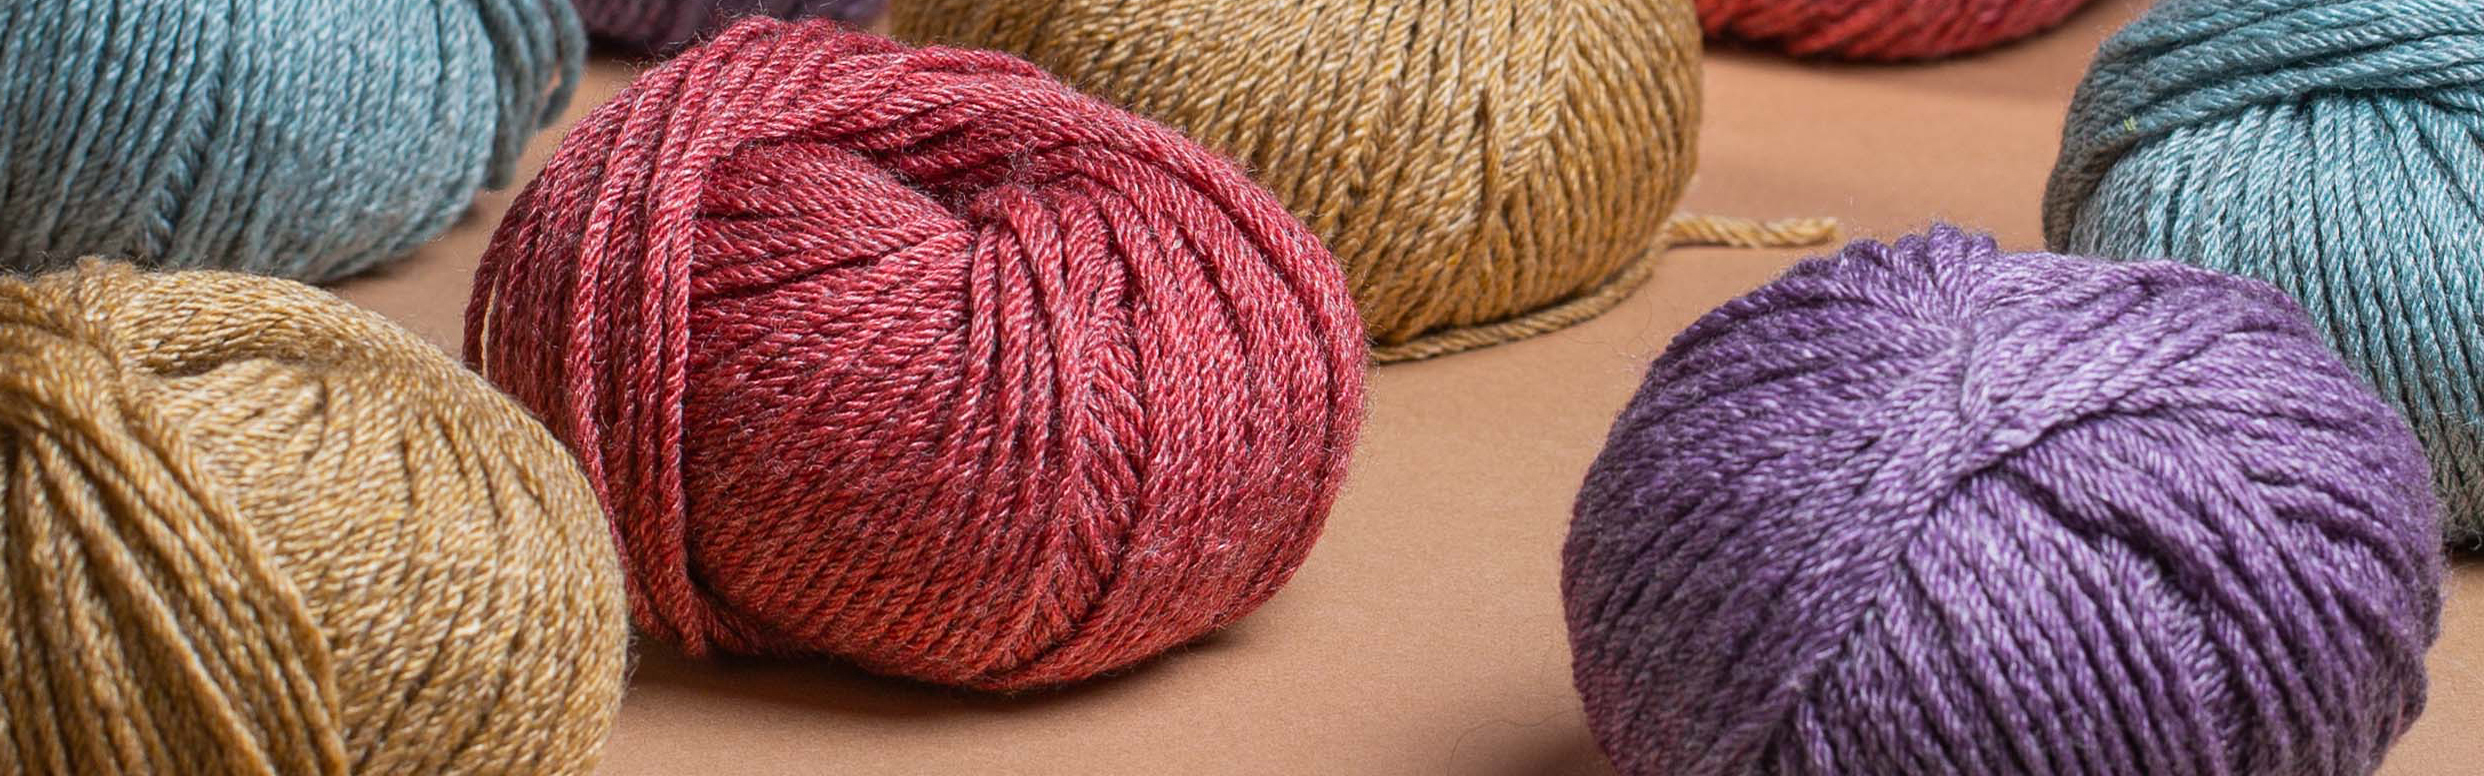 Visokokvalitetne pređe za pletenje, kukičanje i filc Lana Grossa Vune | Carapevuna | Hand-dyed